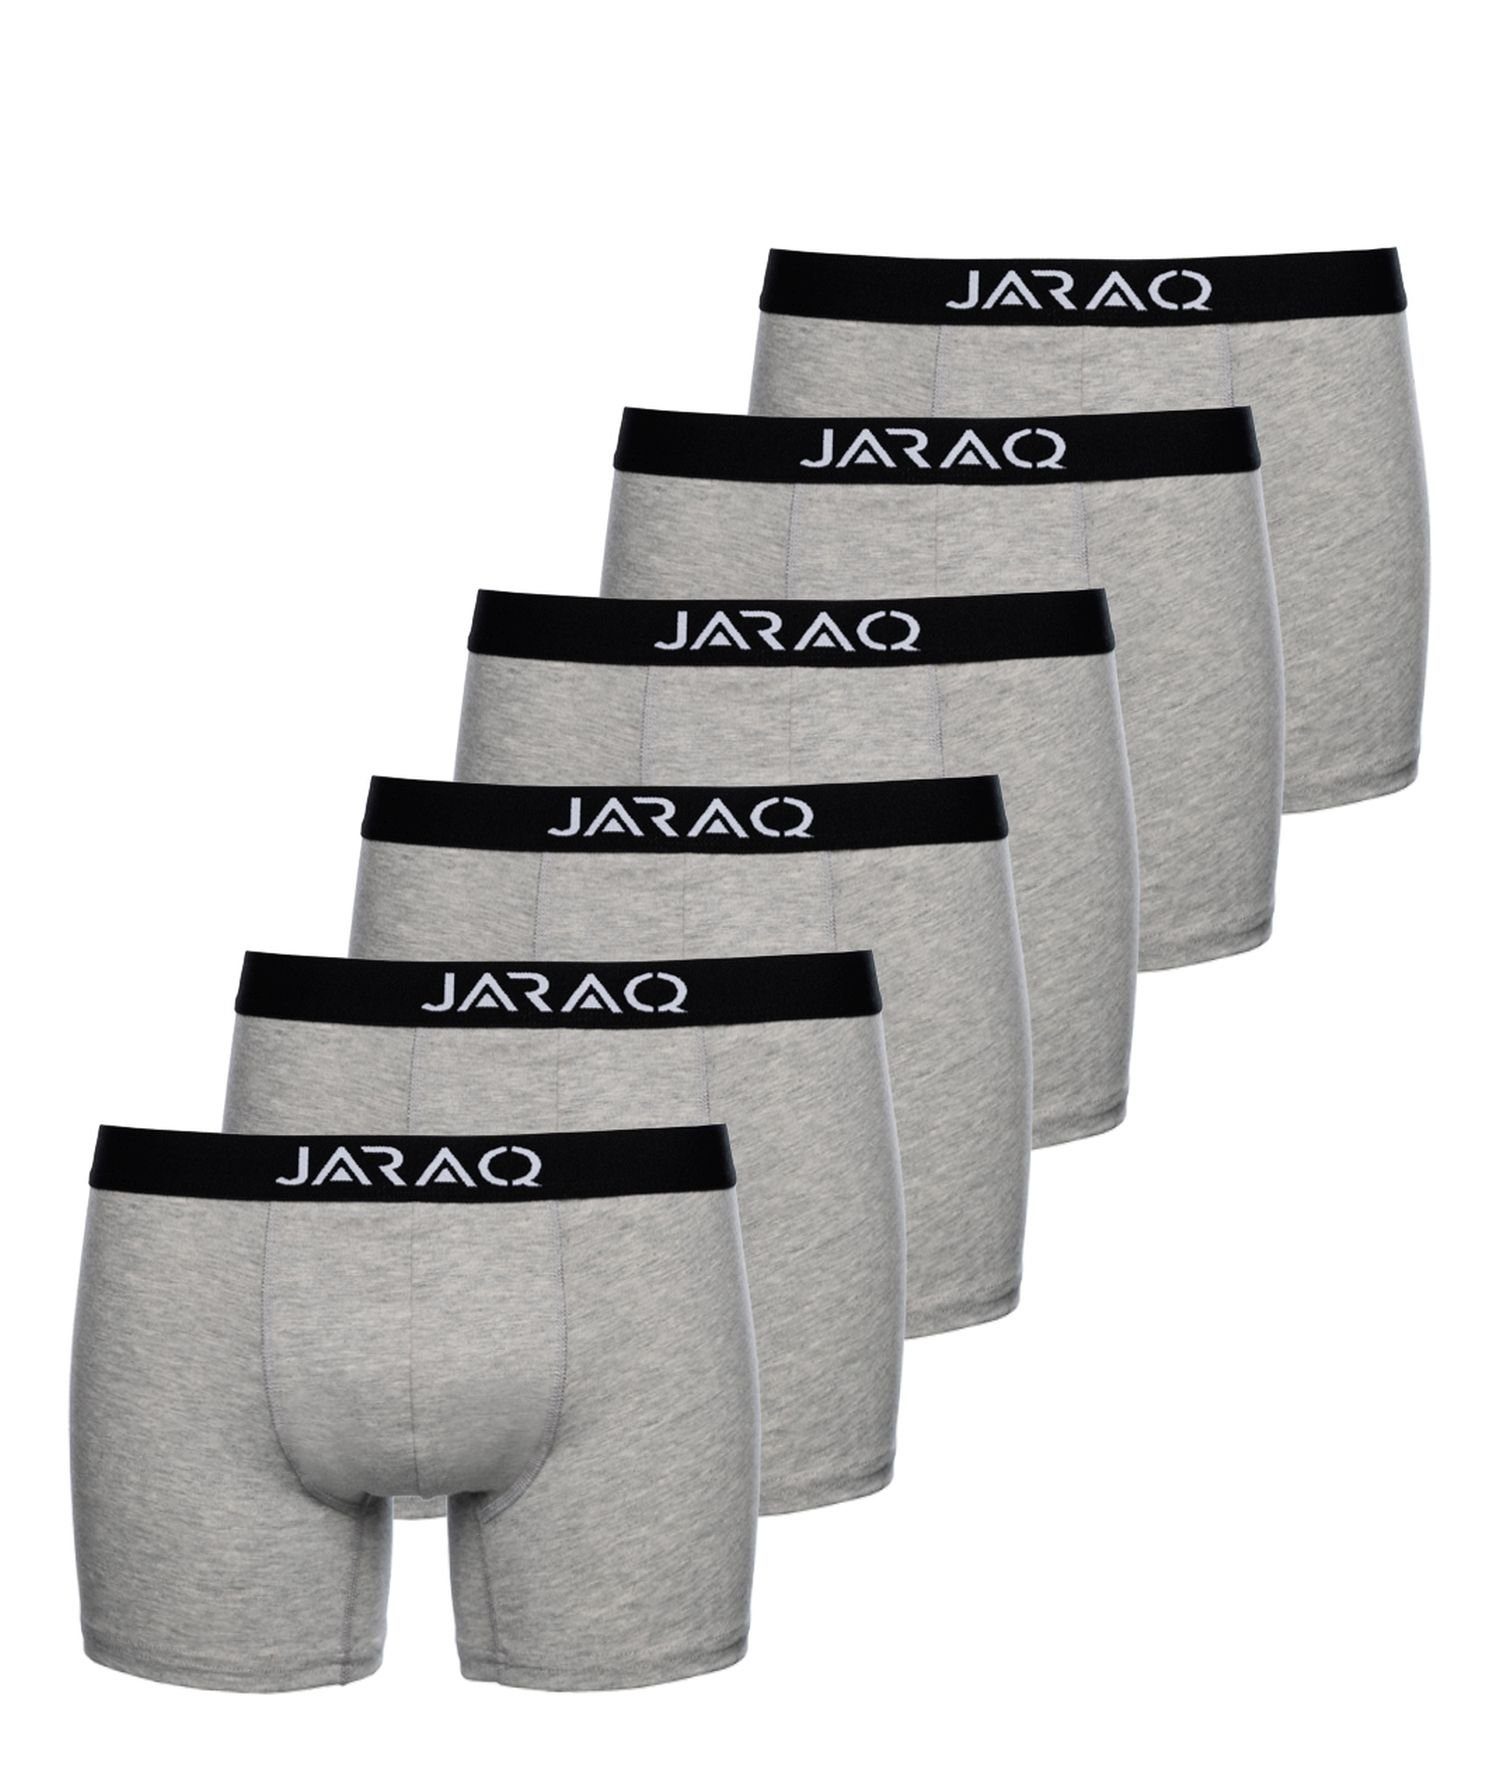 Boxer Männer Perfekte Passform für Hellgrau JARAQ (6-St) 4XL Herren Boxershorts Unterhosen S JARAQ Baumwolle Pack 6er -